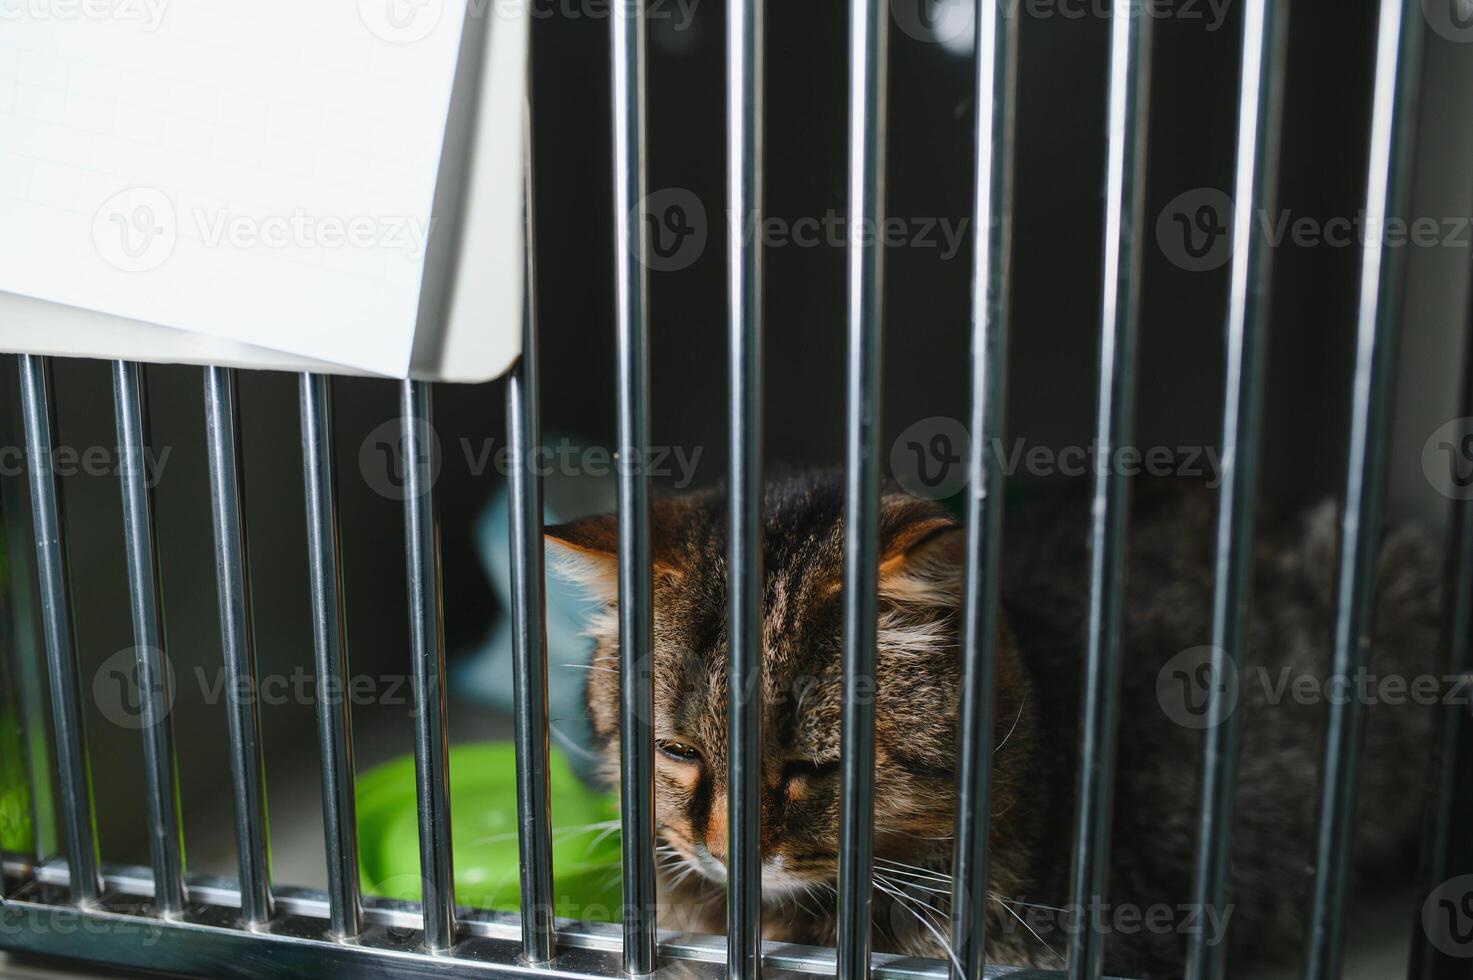 abandonado gato atrás a cerca dentro animal abrigo. animal adoção. brincalhão malhado gato foto